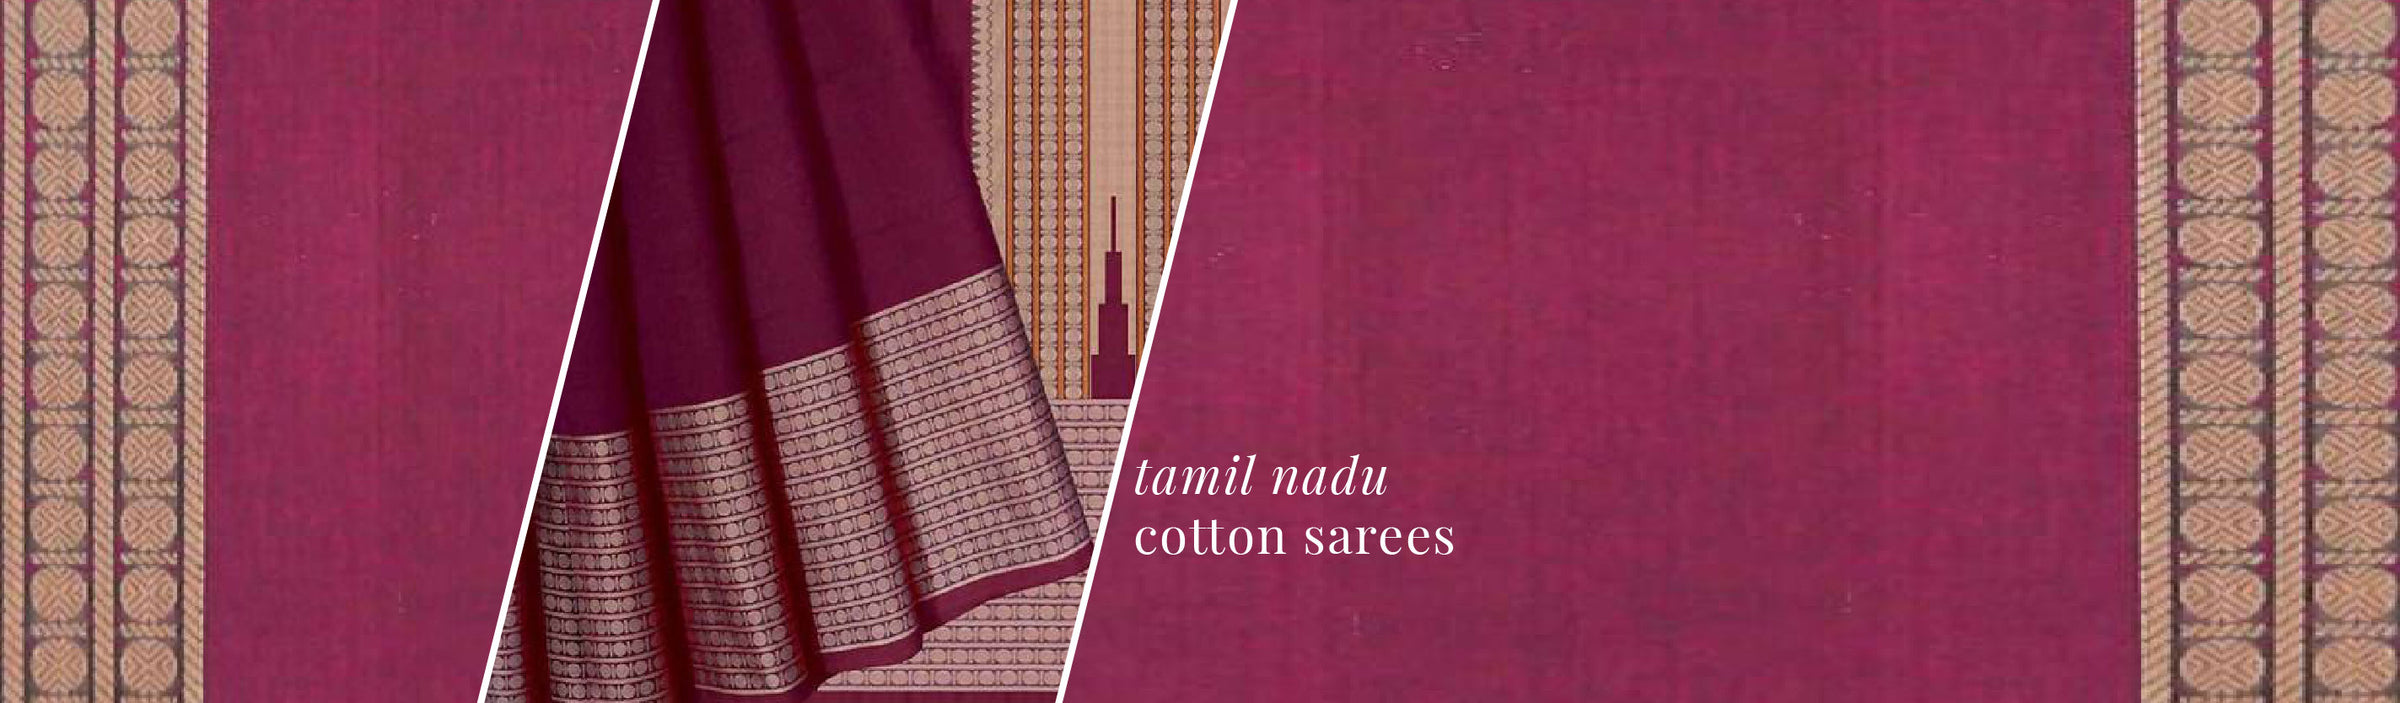 Tamil Nadu Cotton Sarees